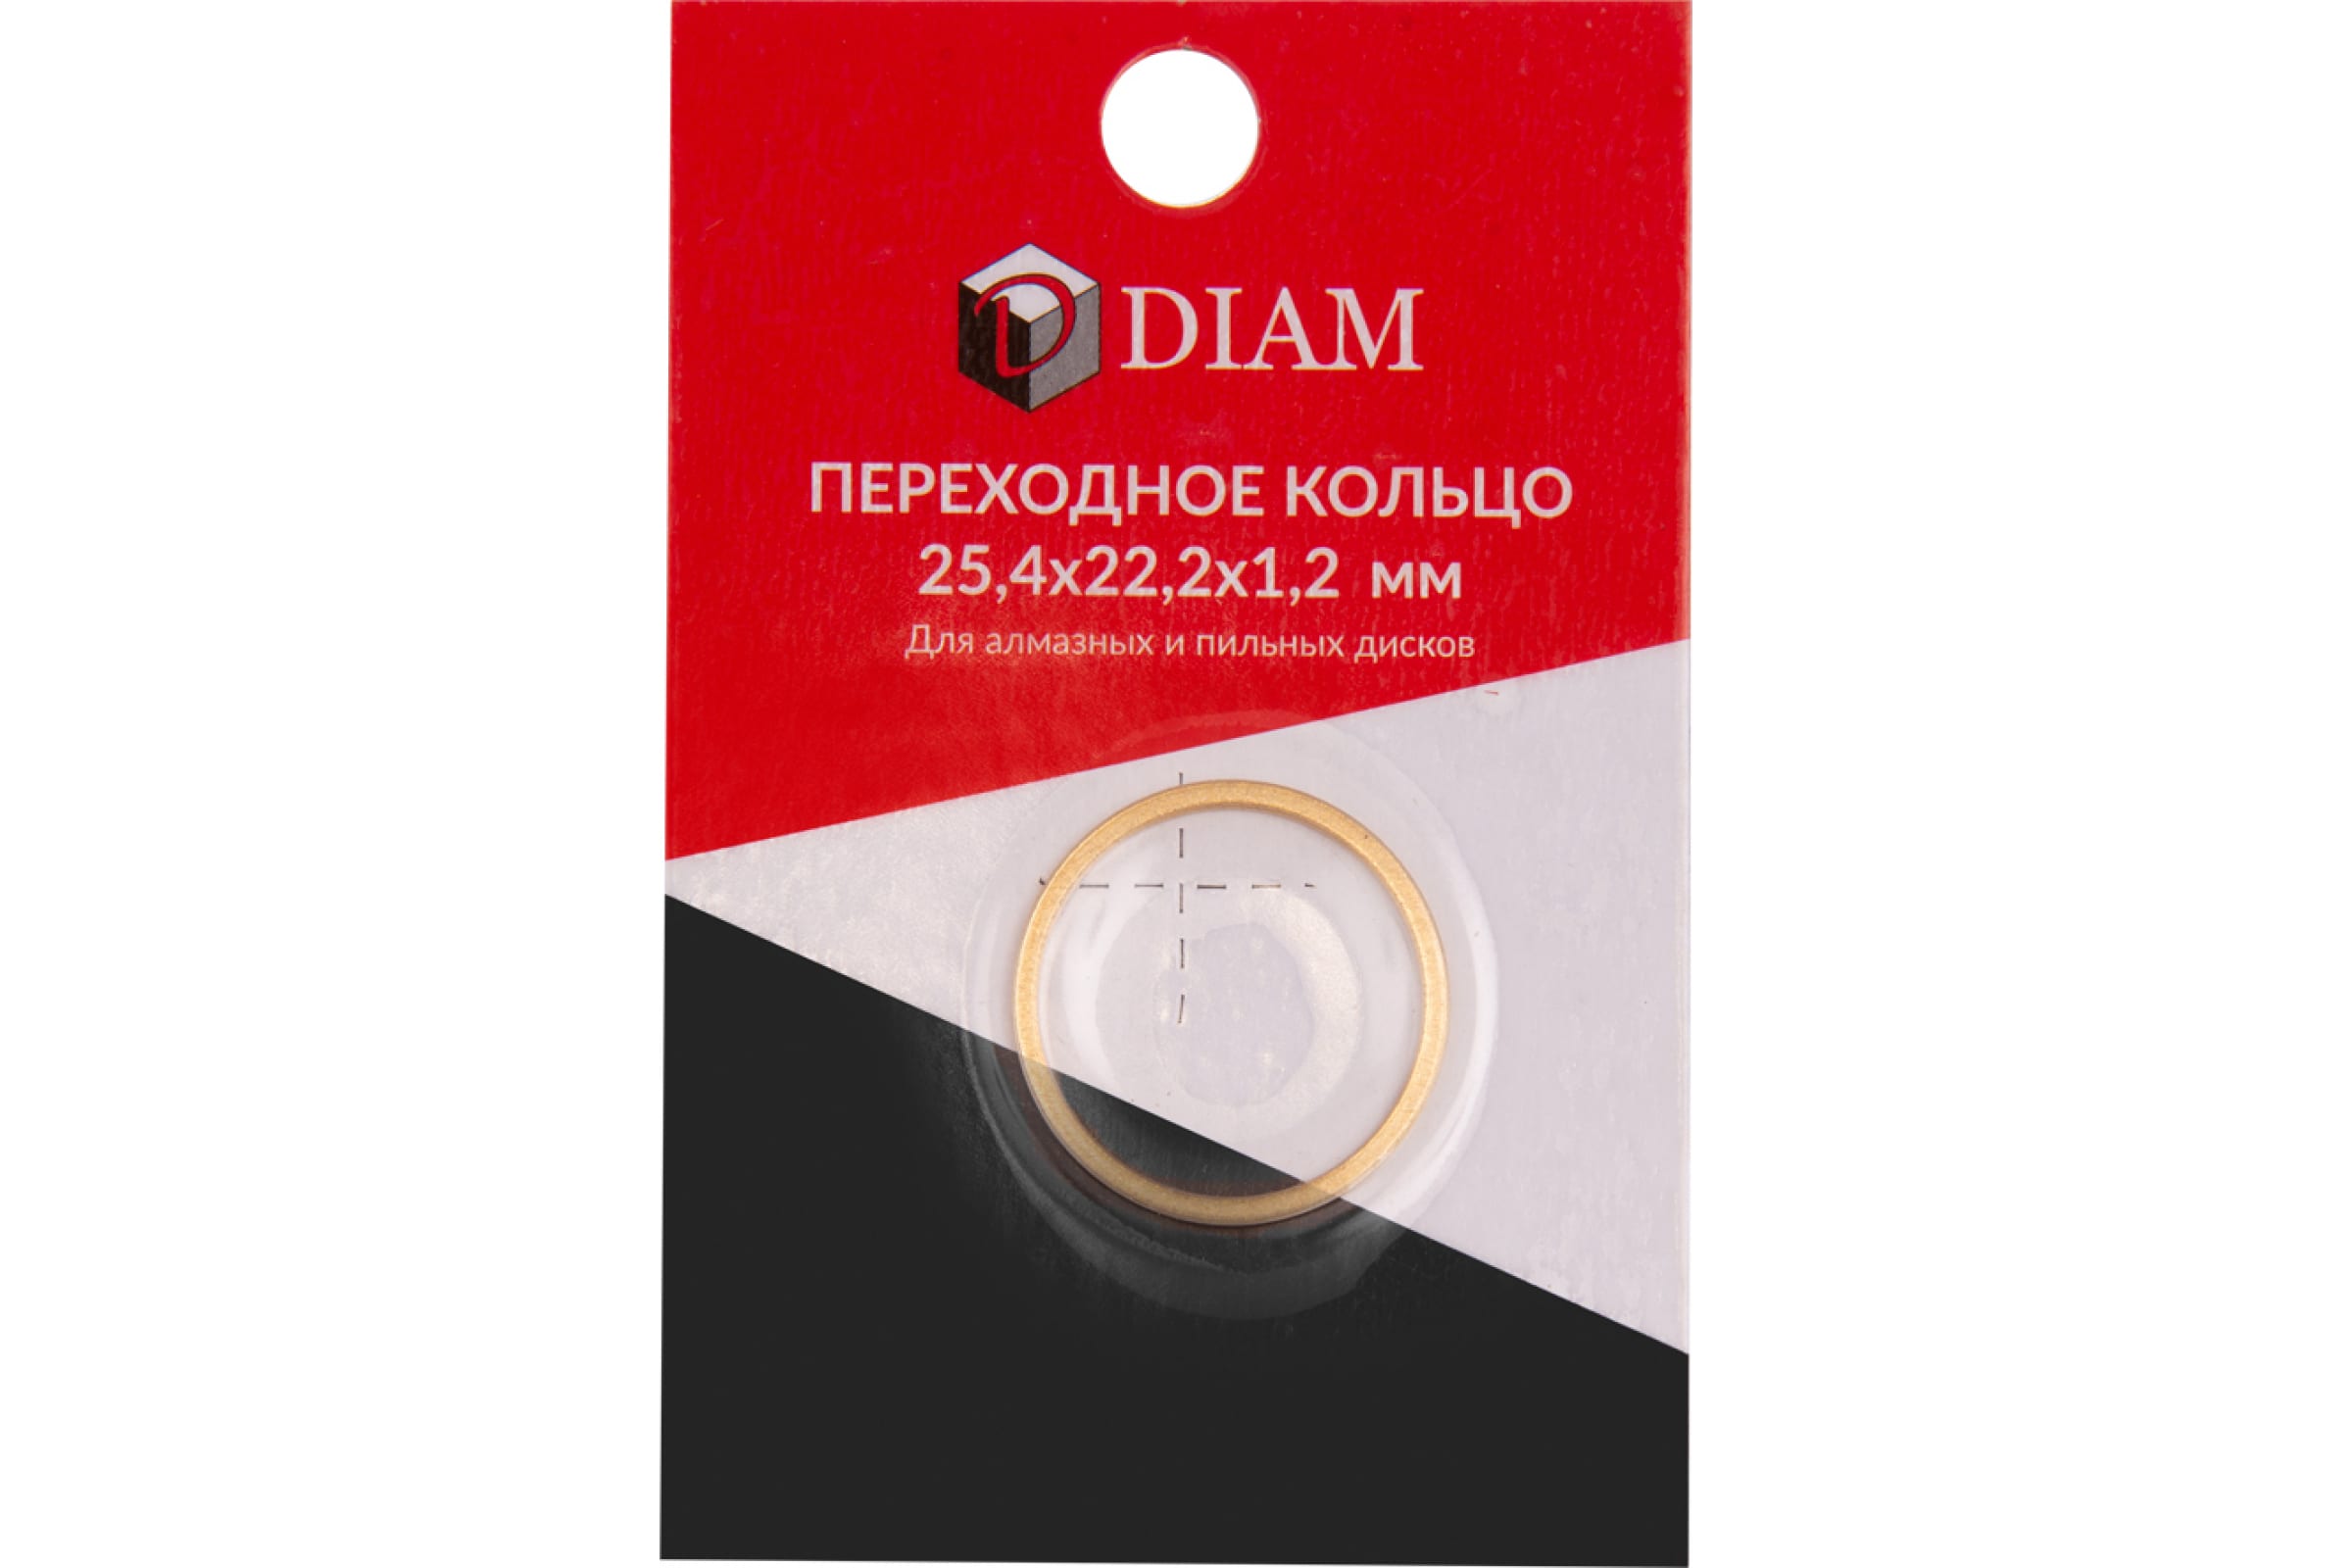 DIAM Переходное кольцо 25,4х22,2х1,2 640084 переходное кольцо для коробки скрытой проводки d70x72мм tdm